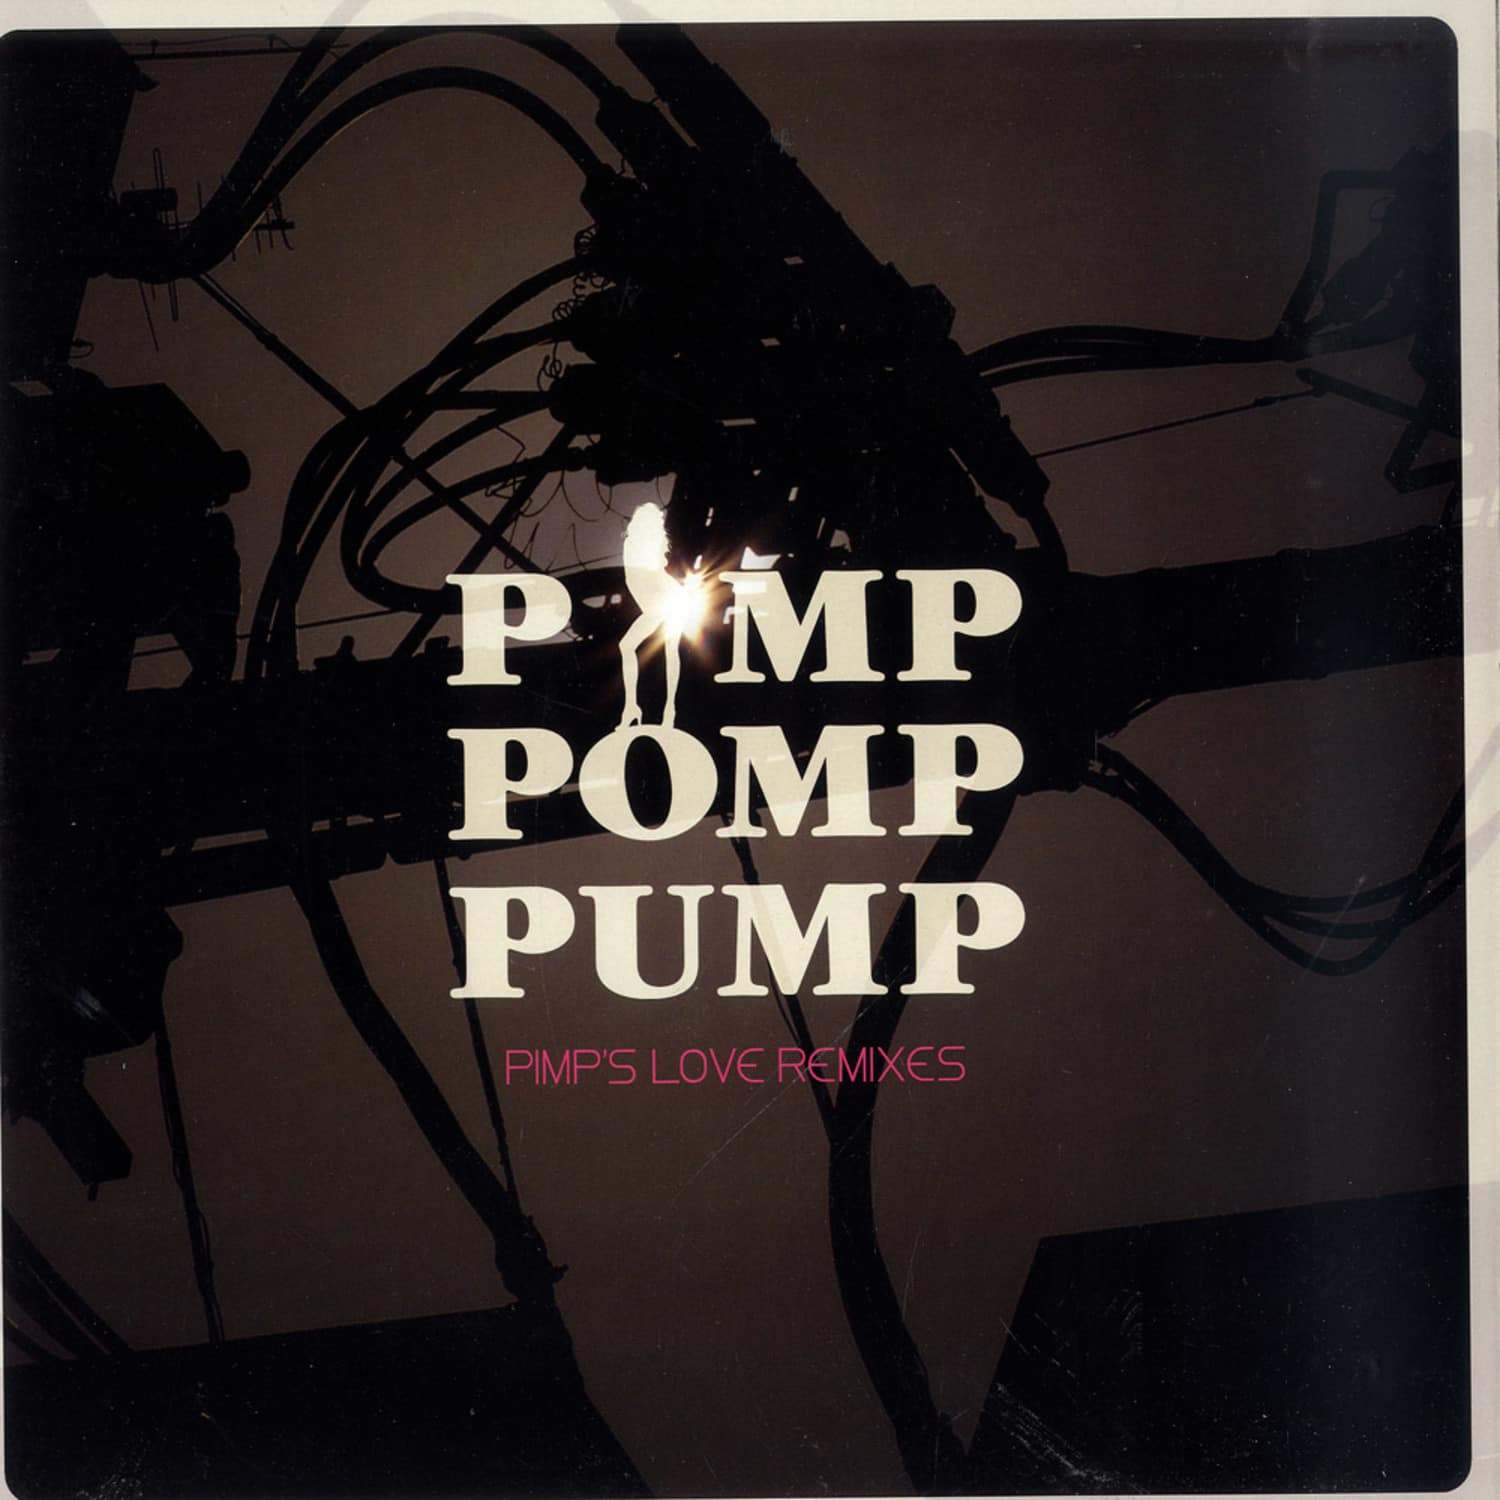 Pimp Pomp Pump - PIMPS LOVE REMIXES